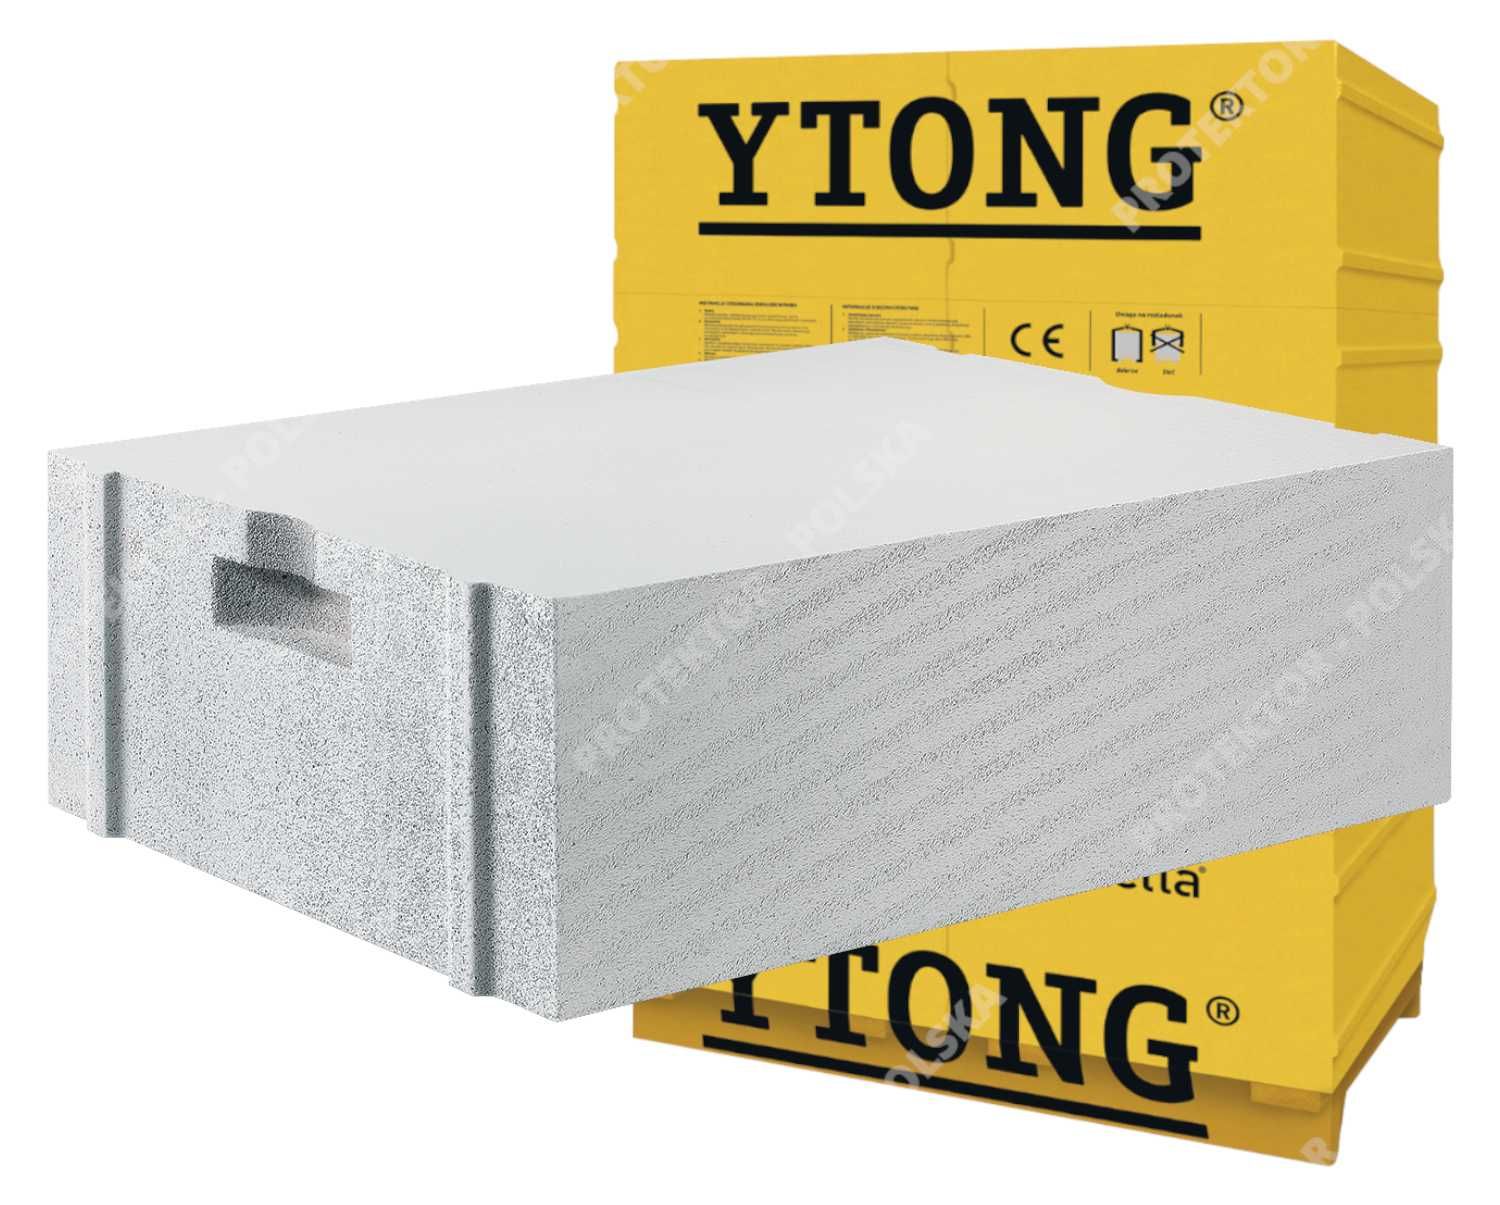 bloczek YTONG 36,5cm beton komórkowy gruby jednowarstwow ENERGO ULTRA